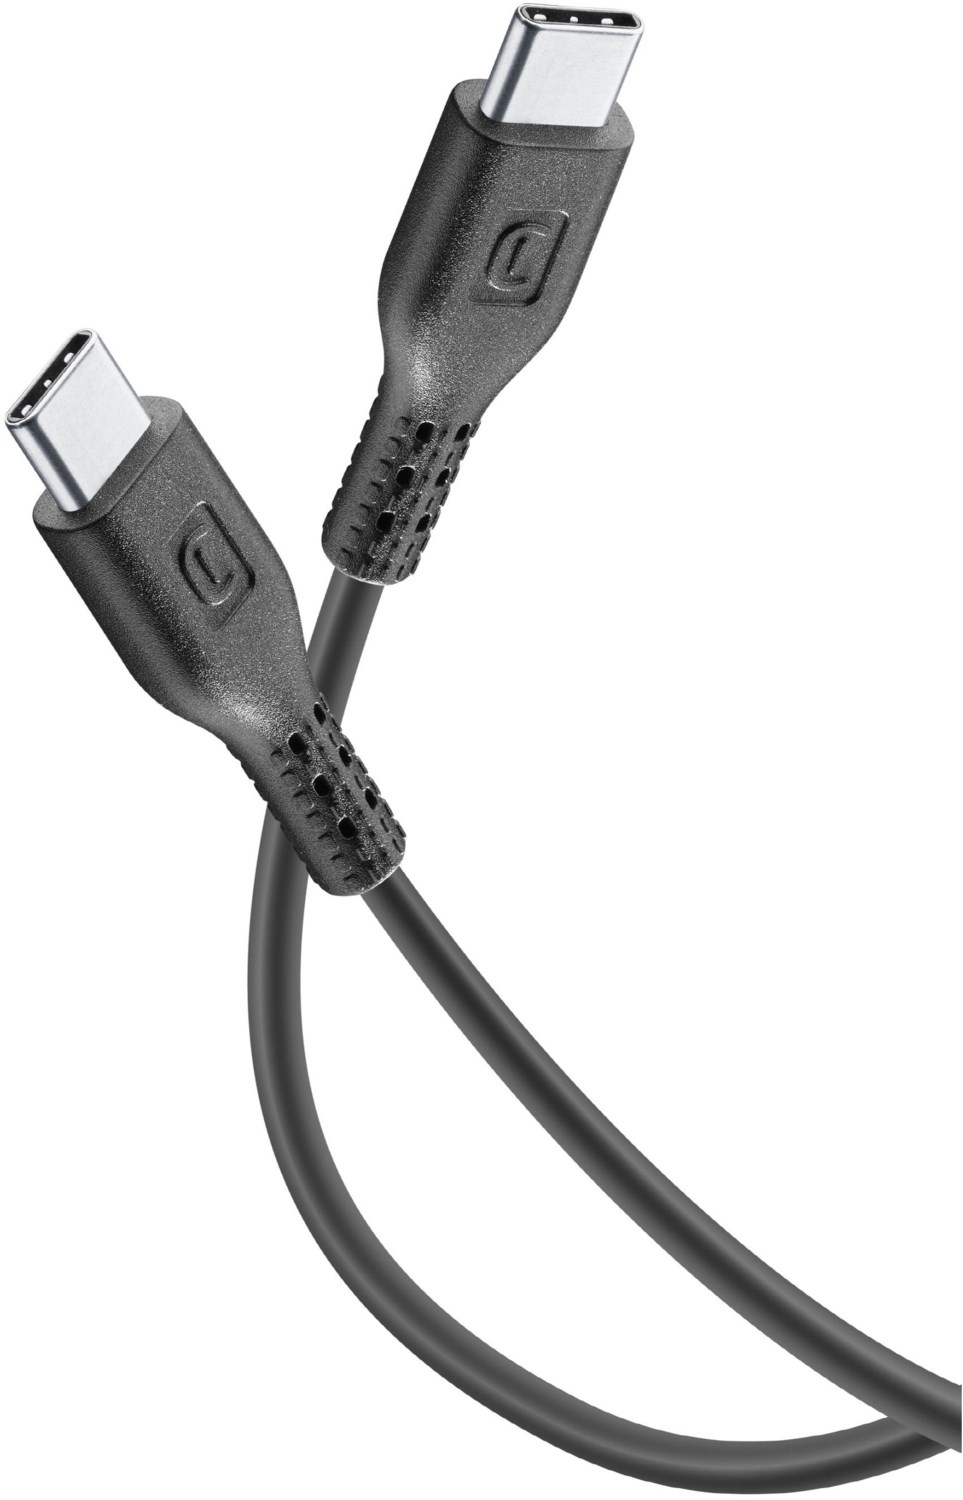 USB Type-C Kabel (1,2m) schwarz